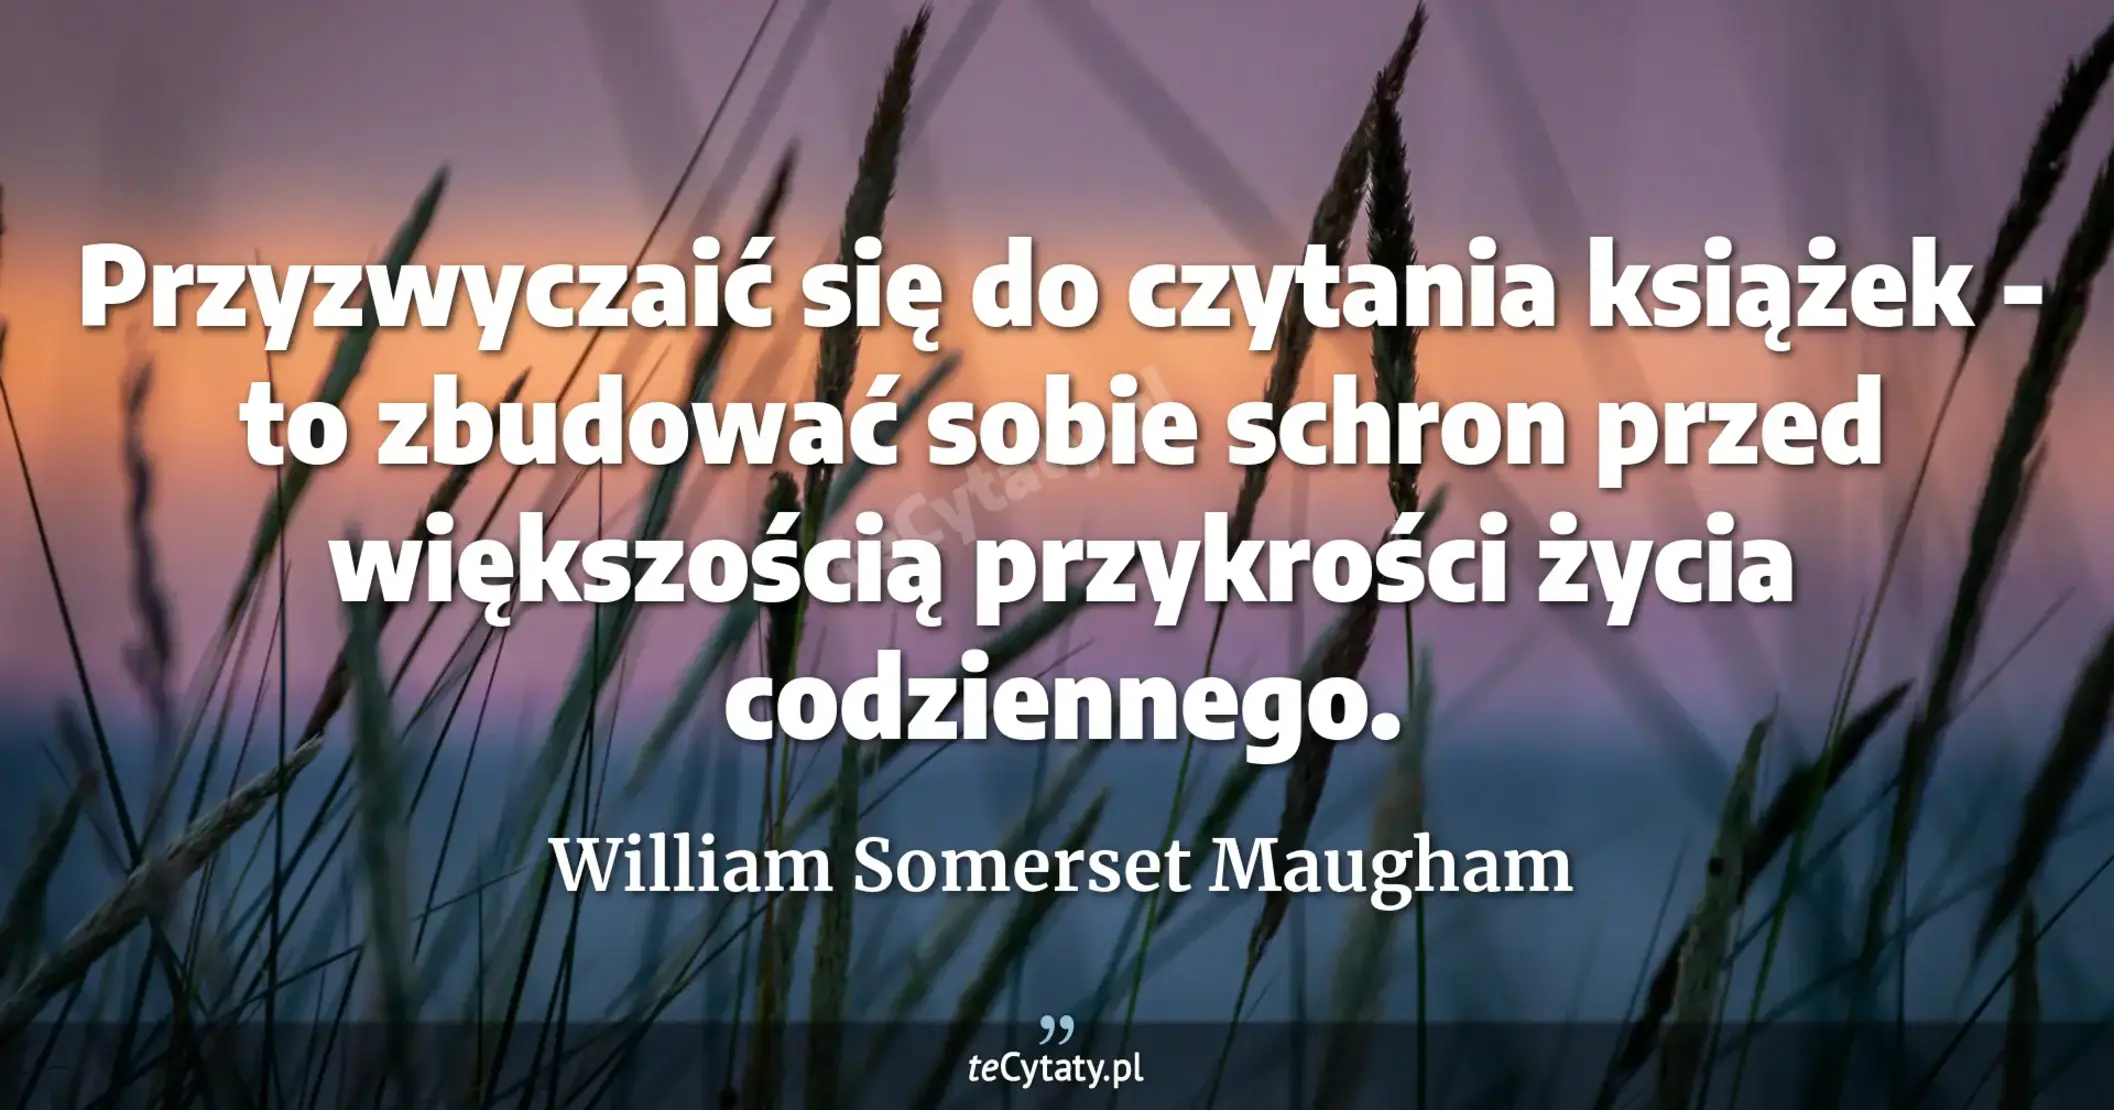 Przyzwyczaić się do czytania książek - to zbudować sobie schron przed większością przykrości życia codziennego. - William Somerset Maugham